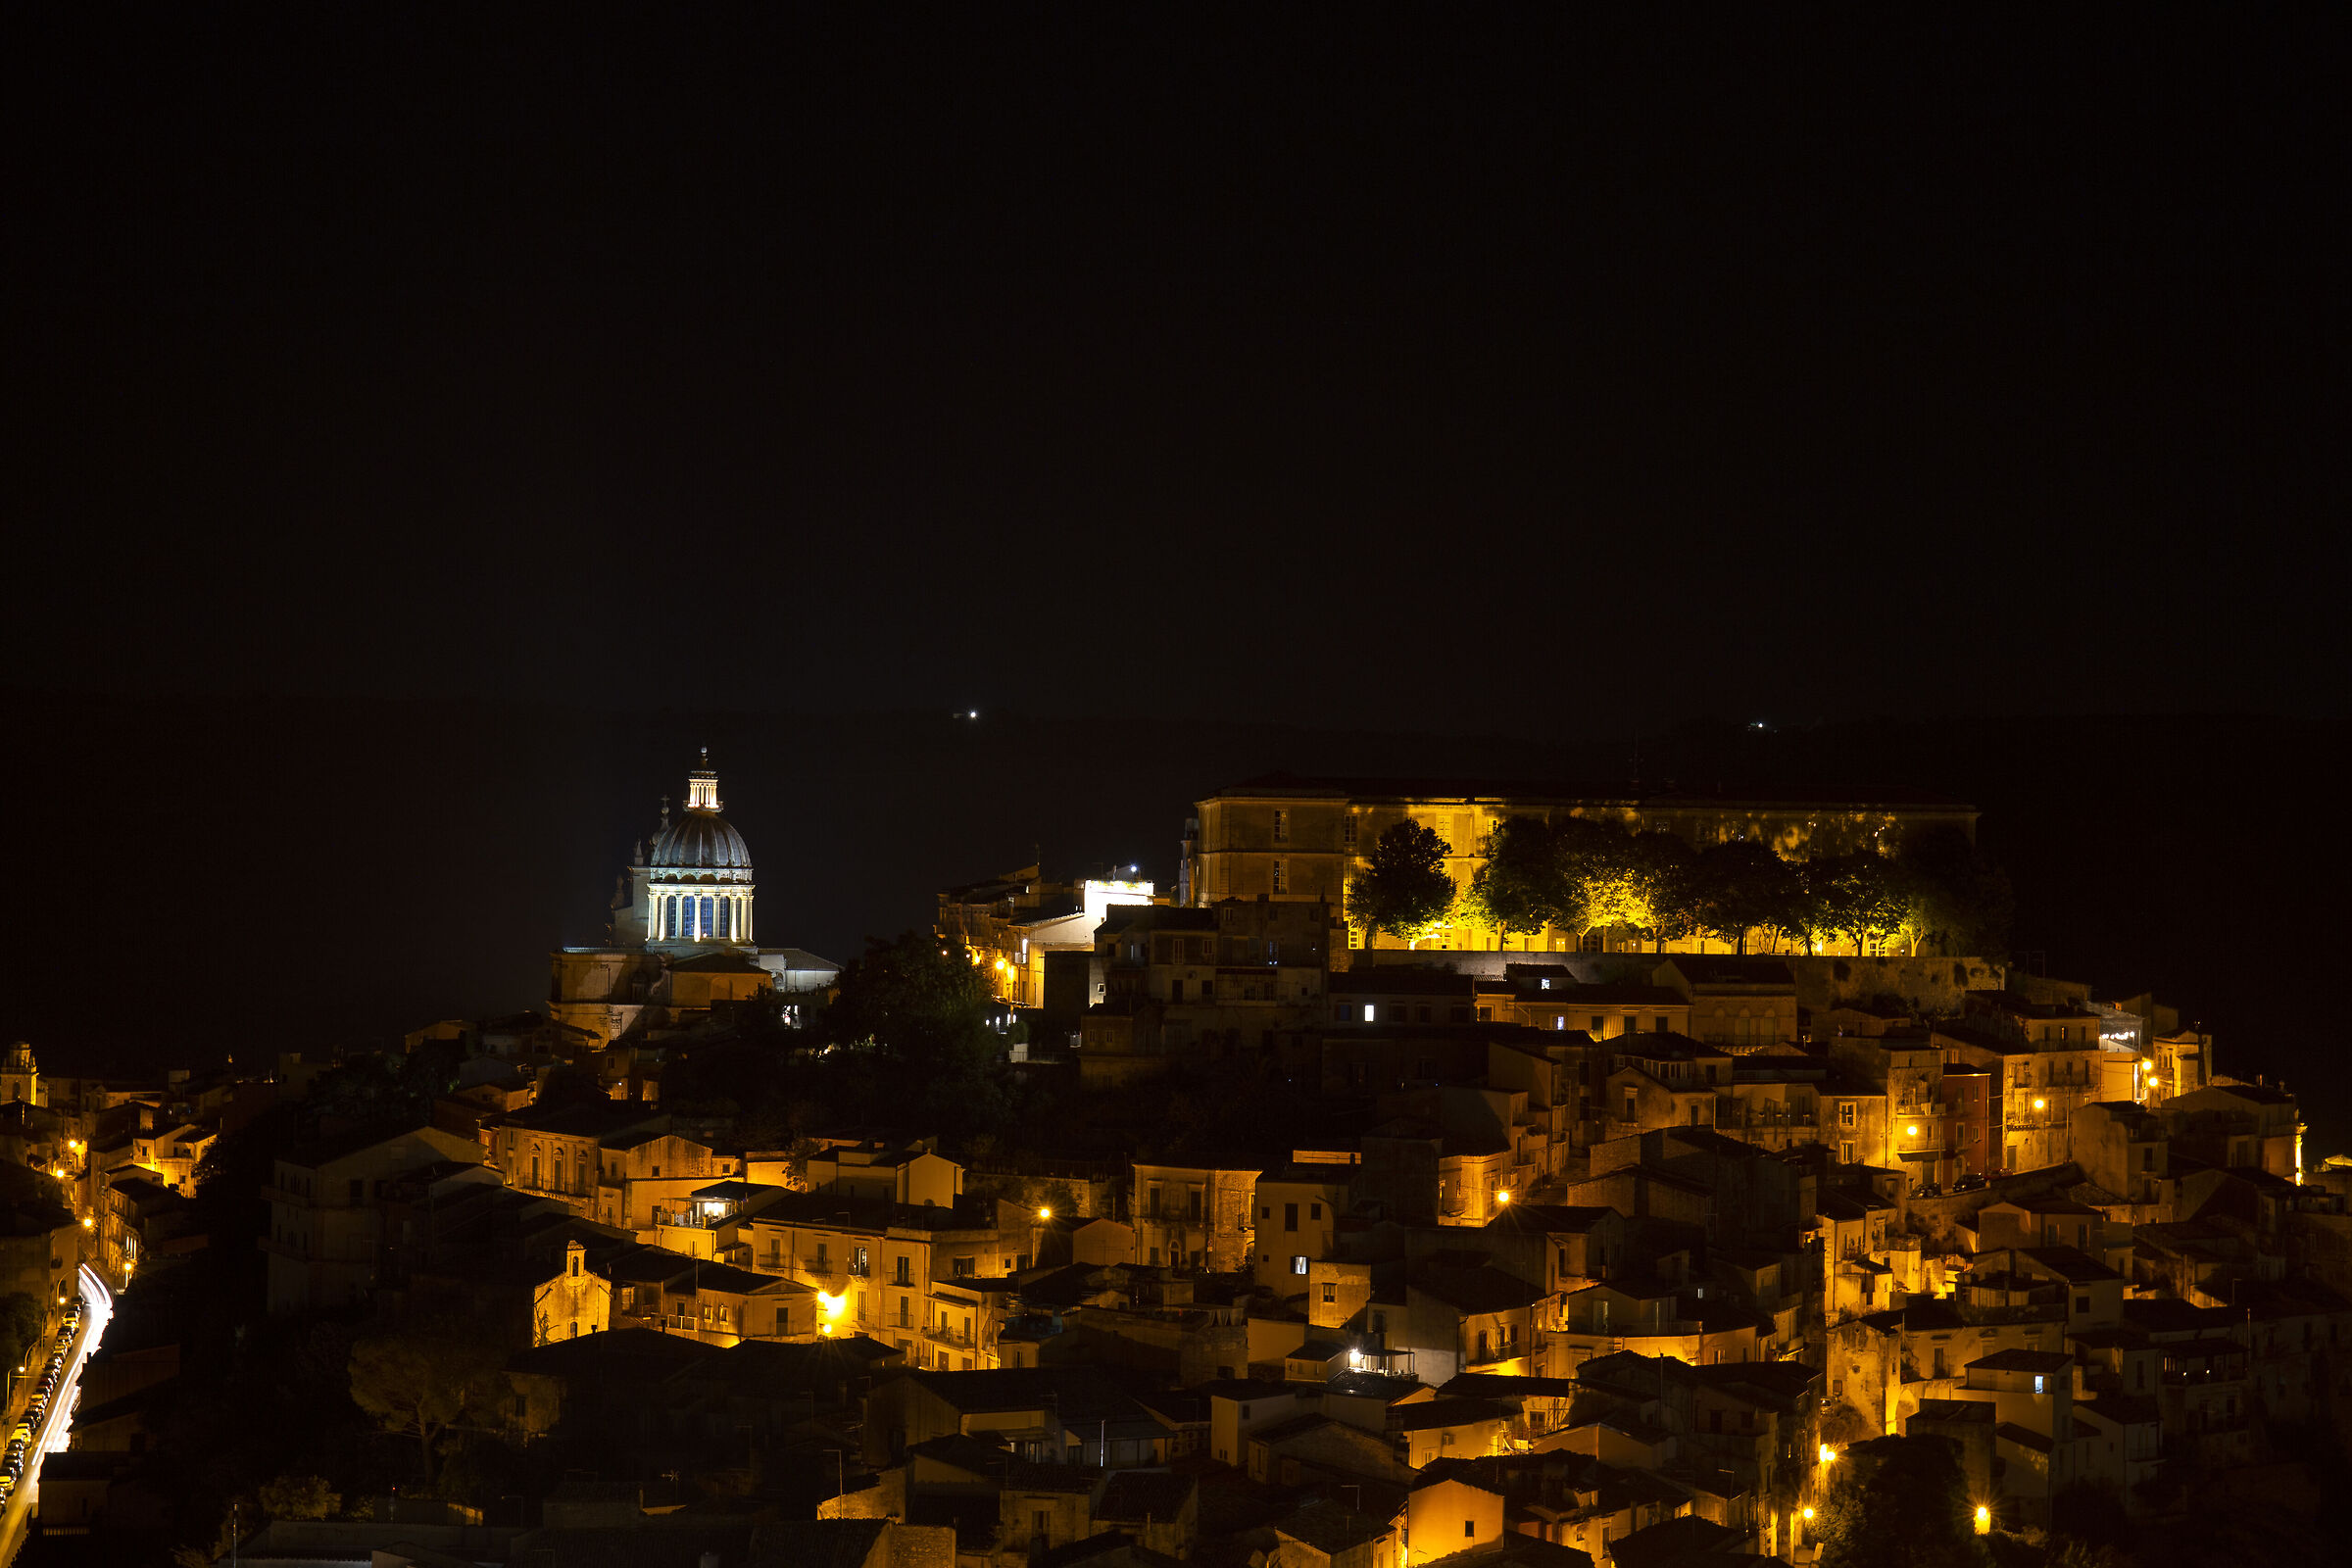 Ragusa Ibla at night...